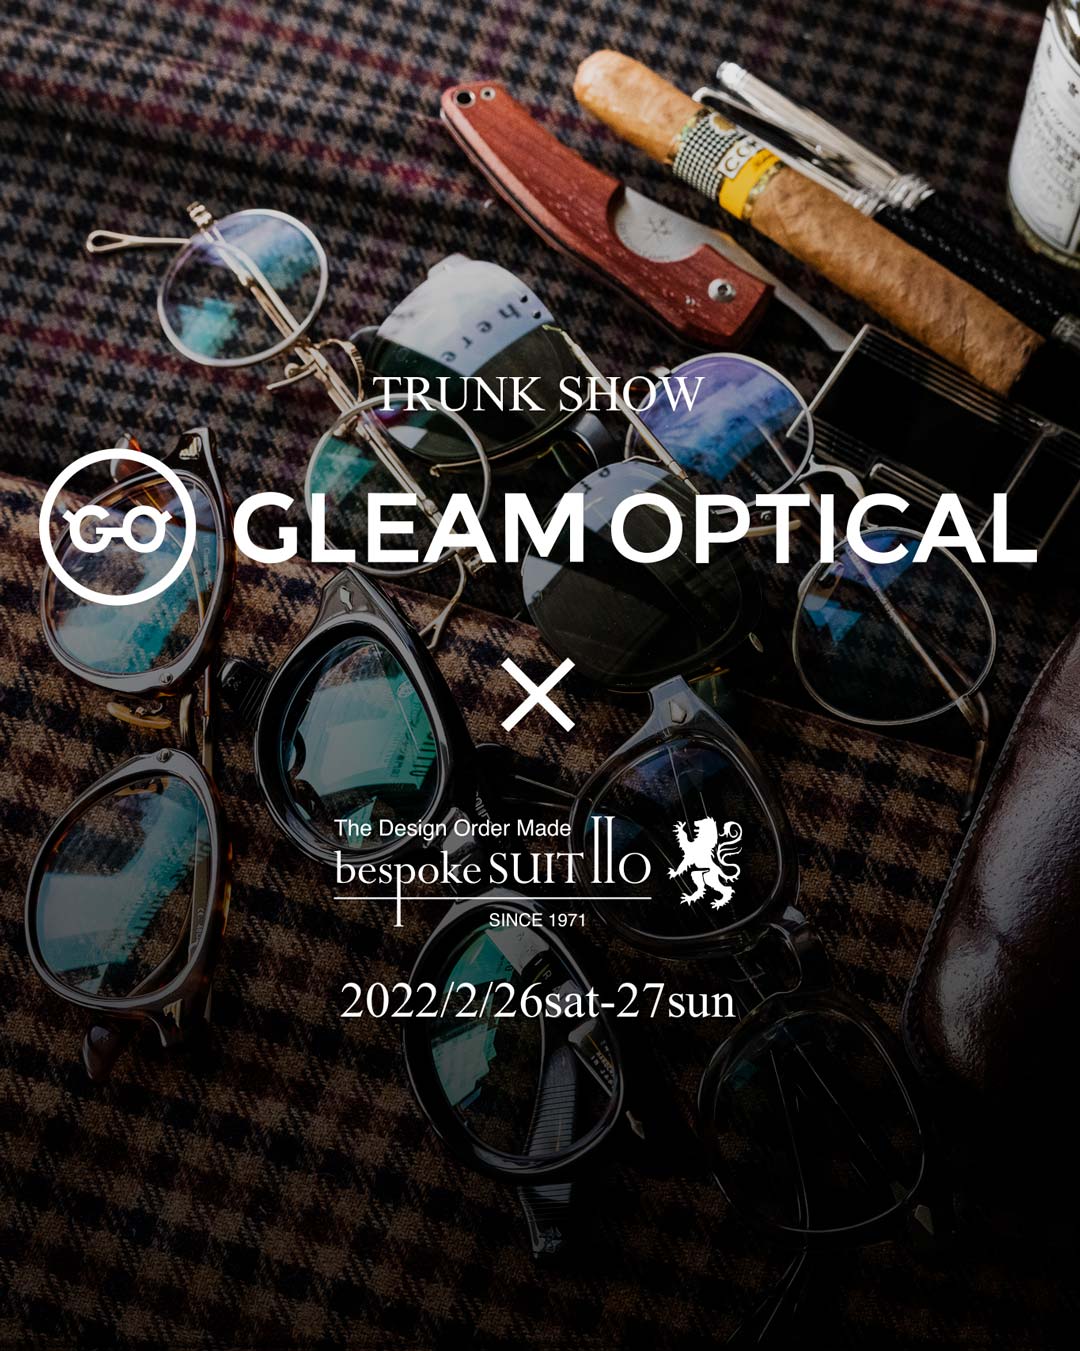 小倉のメガネのセレクトショップGLEAMOPTICALさんのトランクショー開催のお知らせ